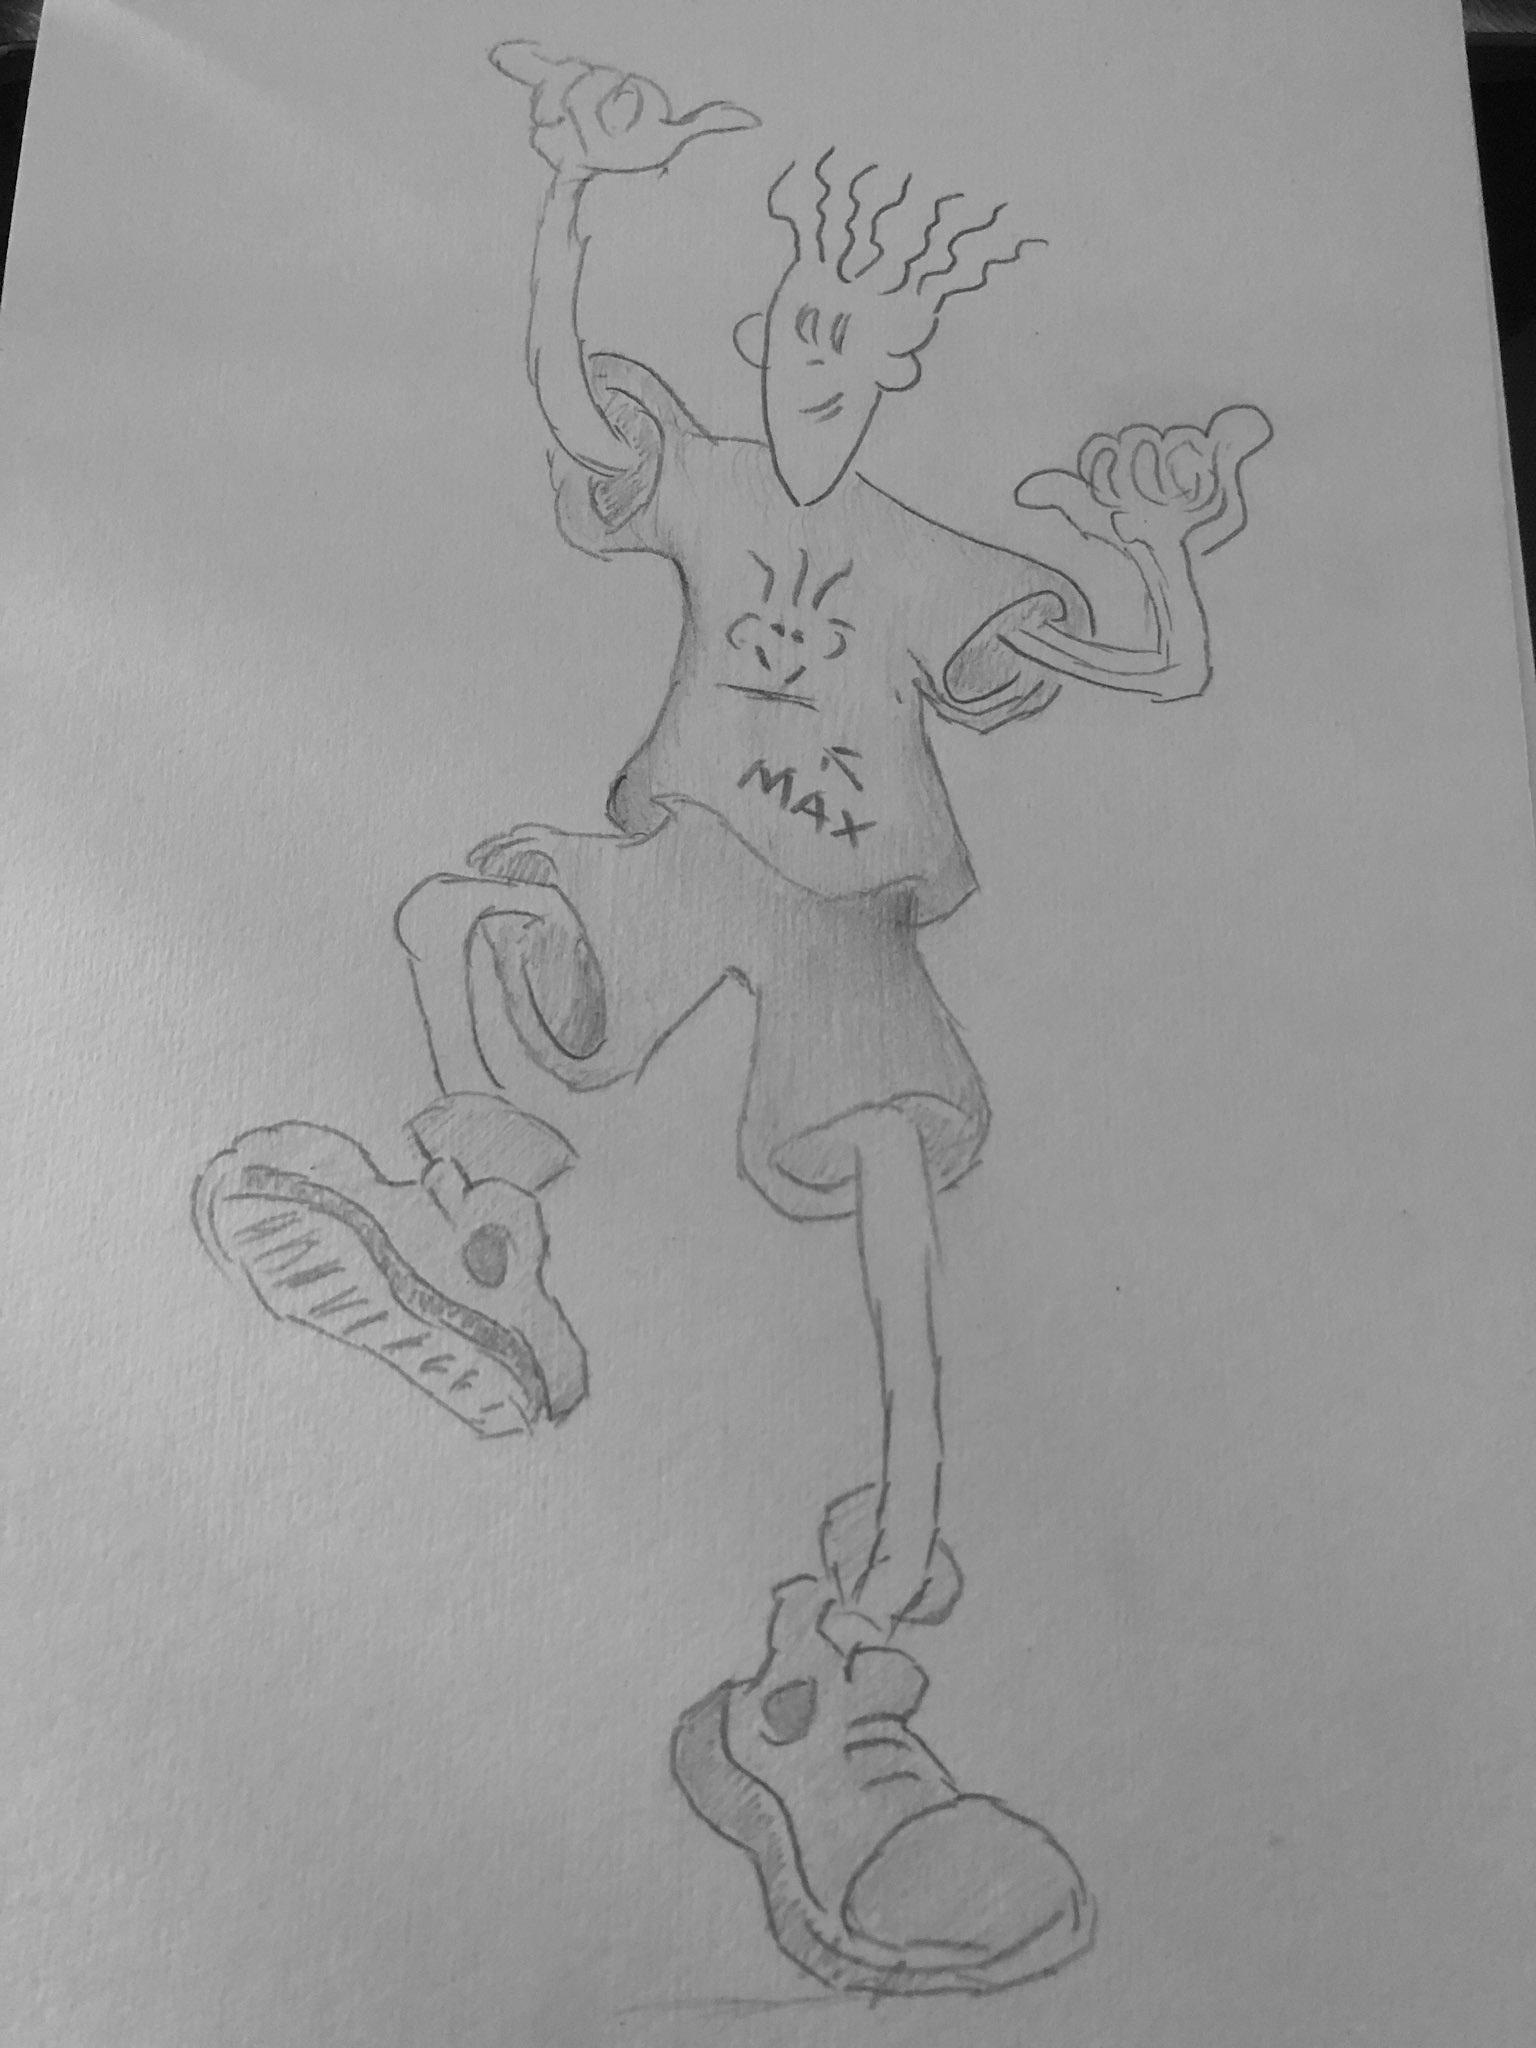 JAE ART - Fido Dido - The 7up Cartoon character